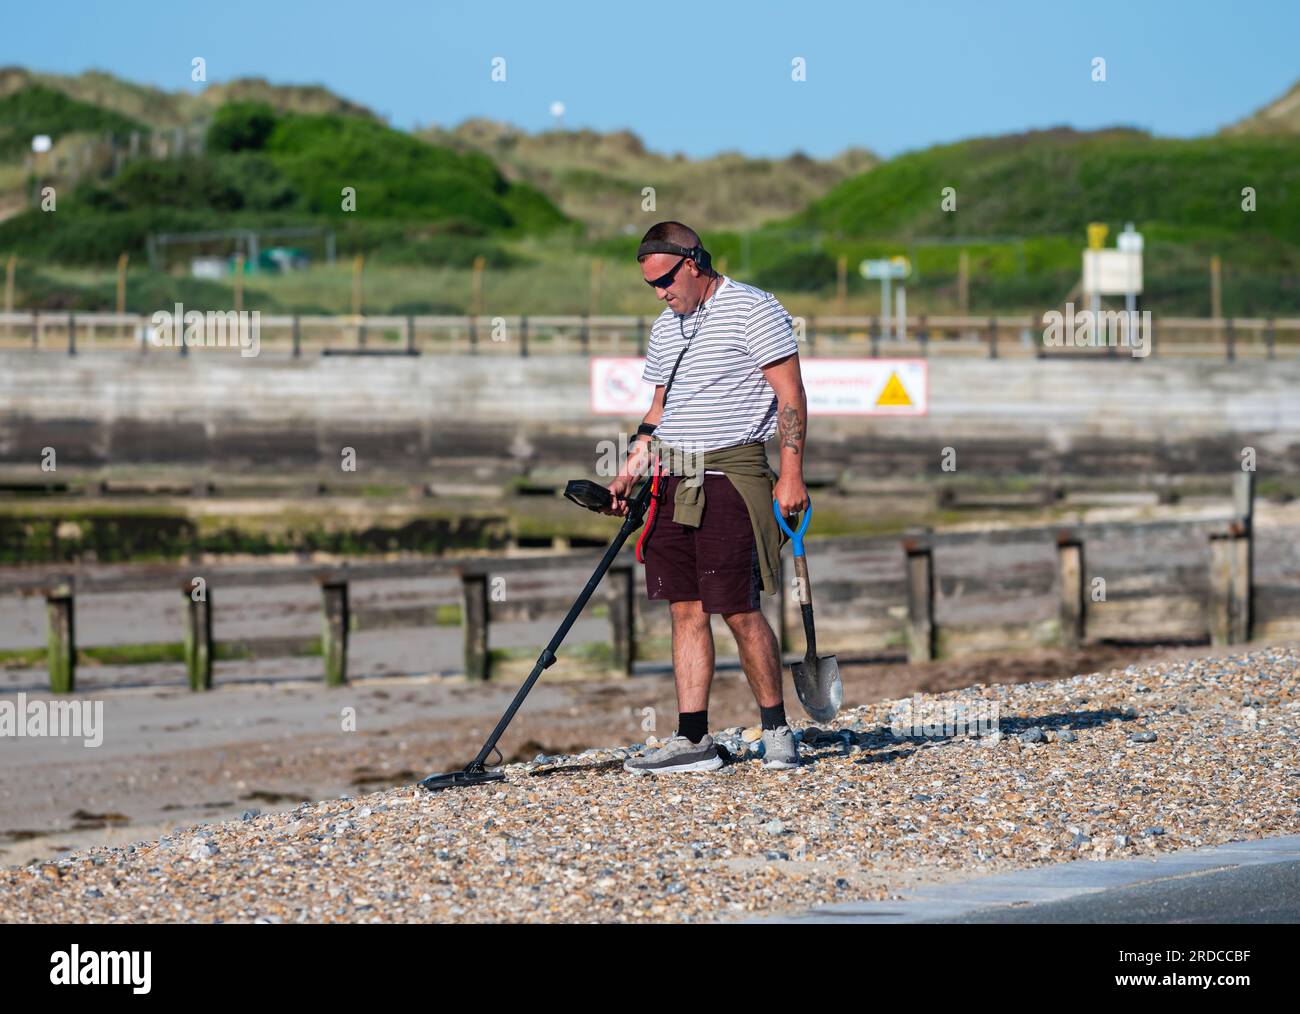 Mann am Kieselstrand mit Metalldetektor, der nach verlorenen oder wertvollen Gegenständen sucht, am Meer in Großbritannien. Metalldetektorin. Stockfoto